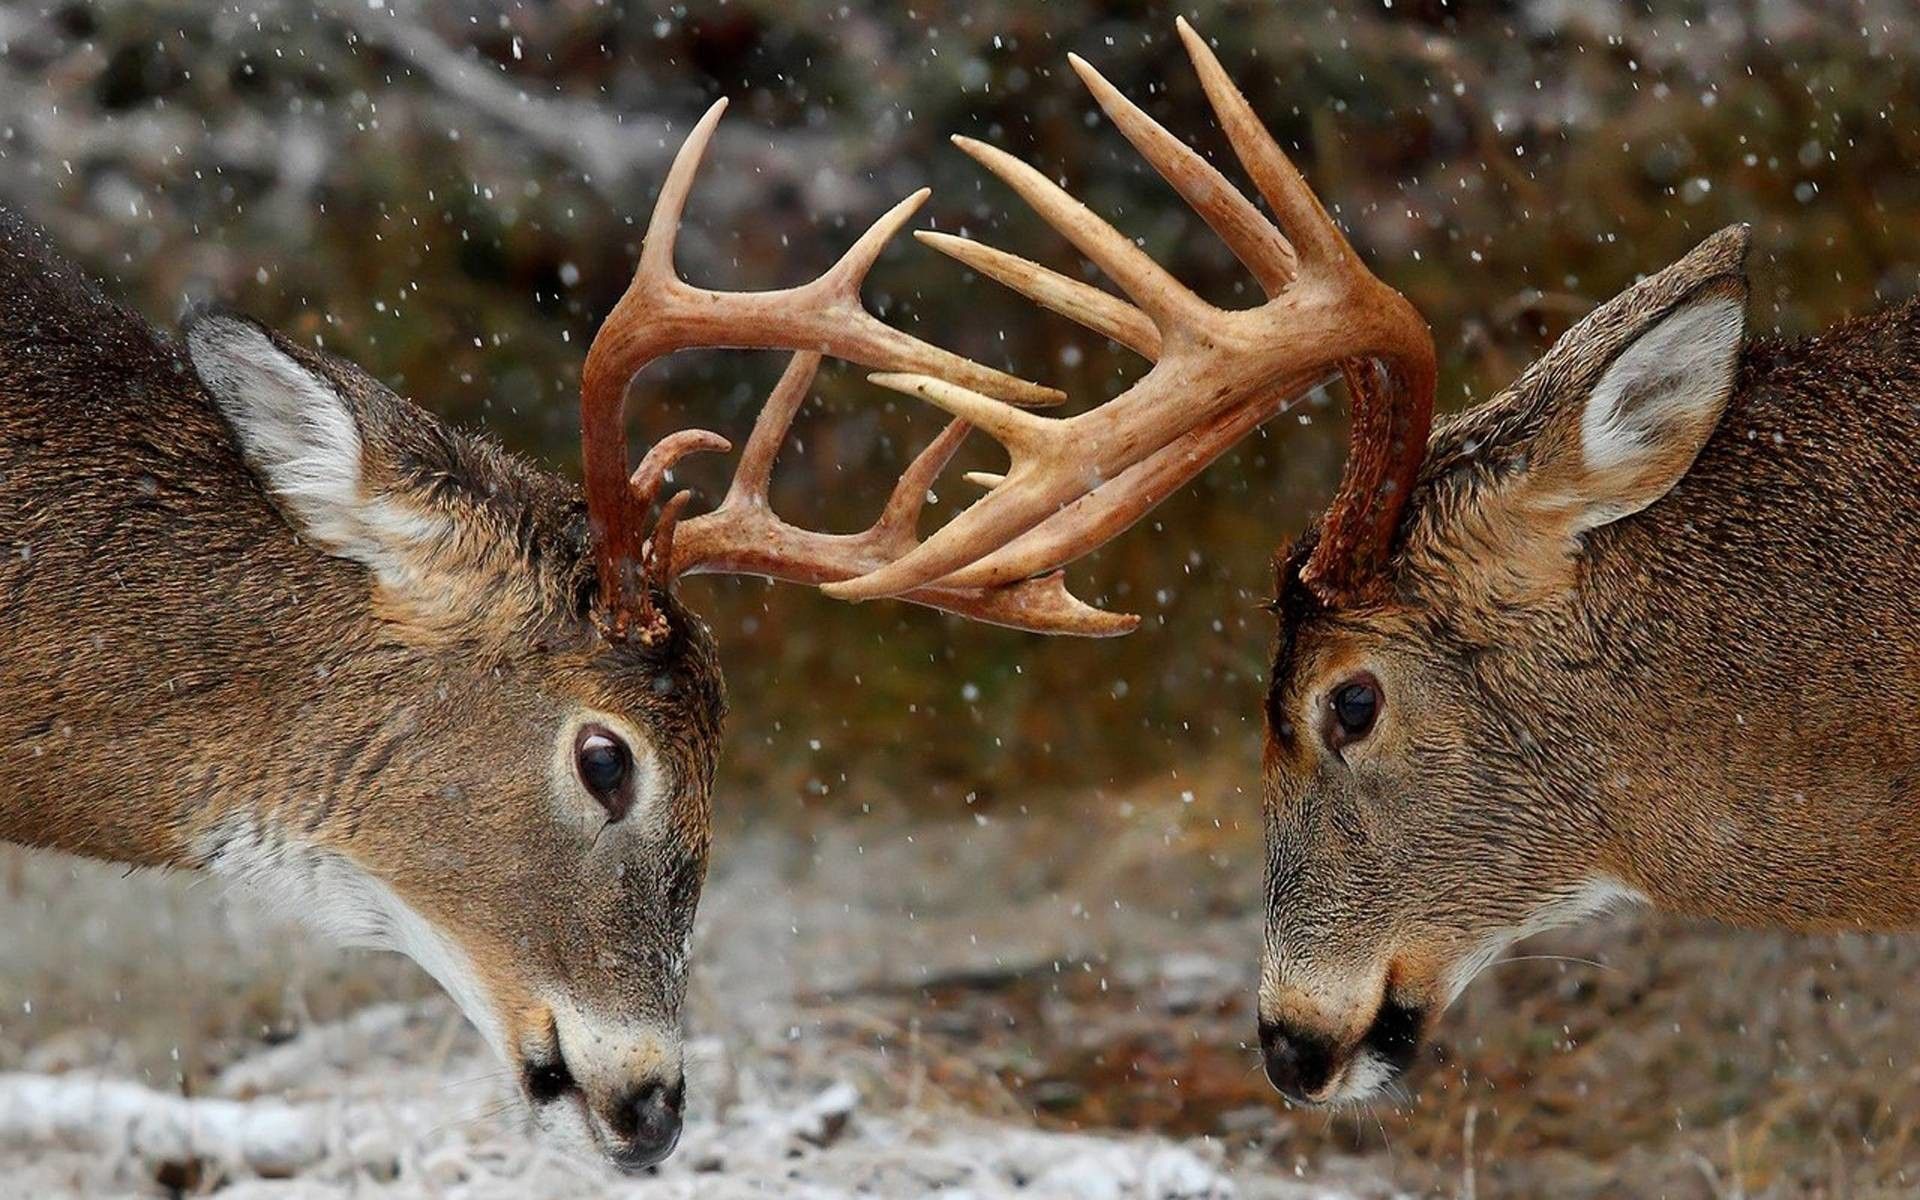 Deer Hunting Wallpapers